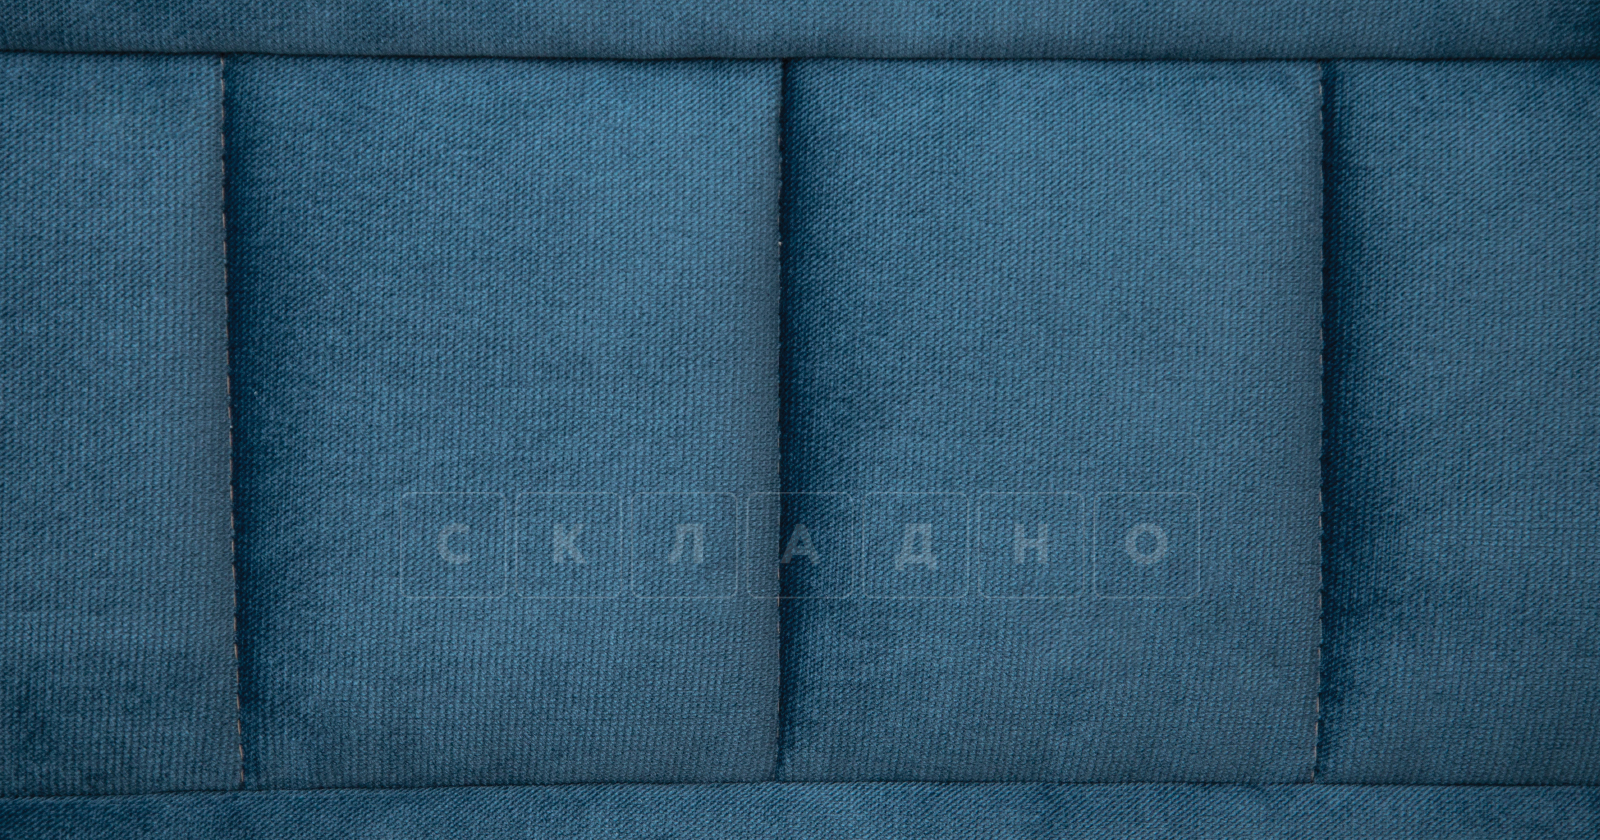 Диван-кровать Дикси синий фото 7 | интернет-магазин Складно